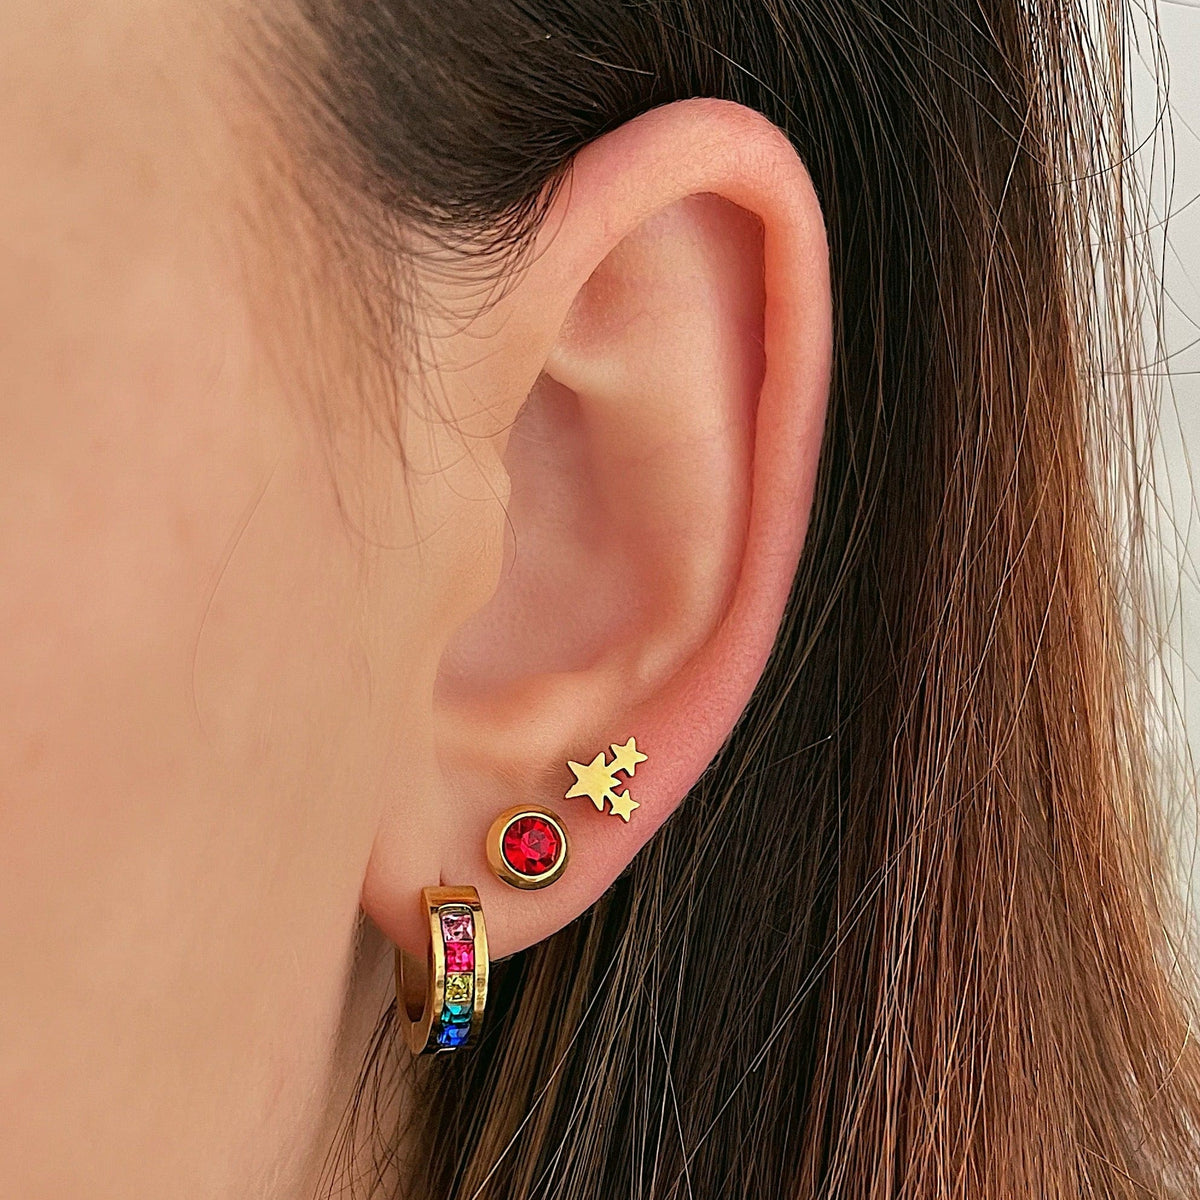 BohoMoon Stainless Steel Twinkle Star Stud Earrings Gold